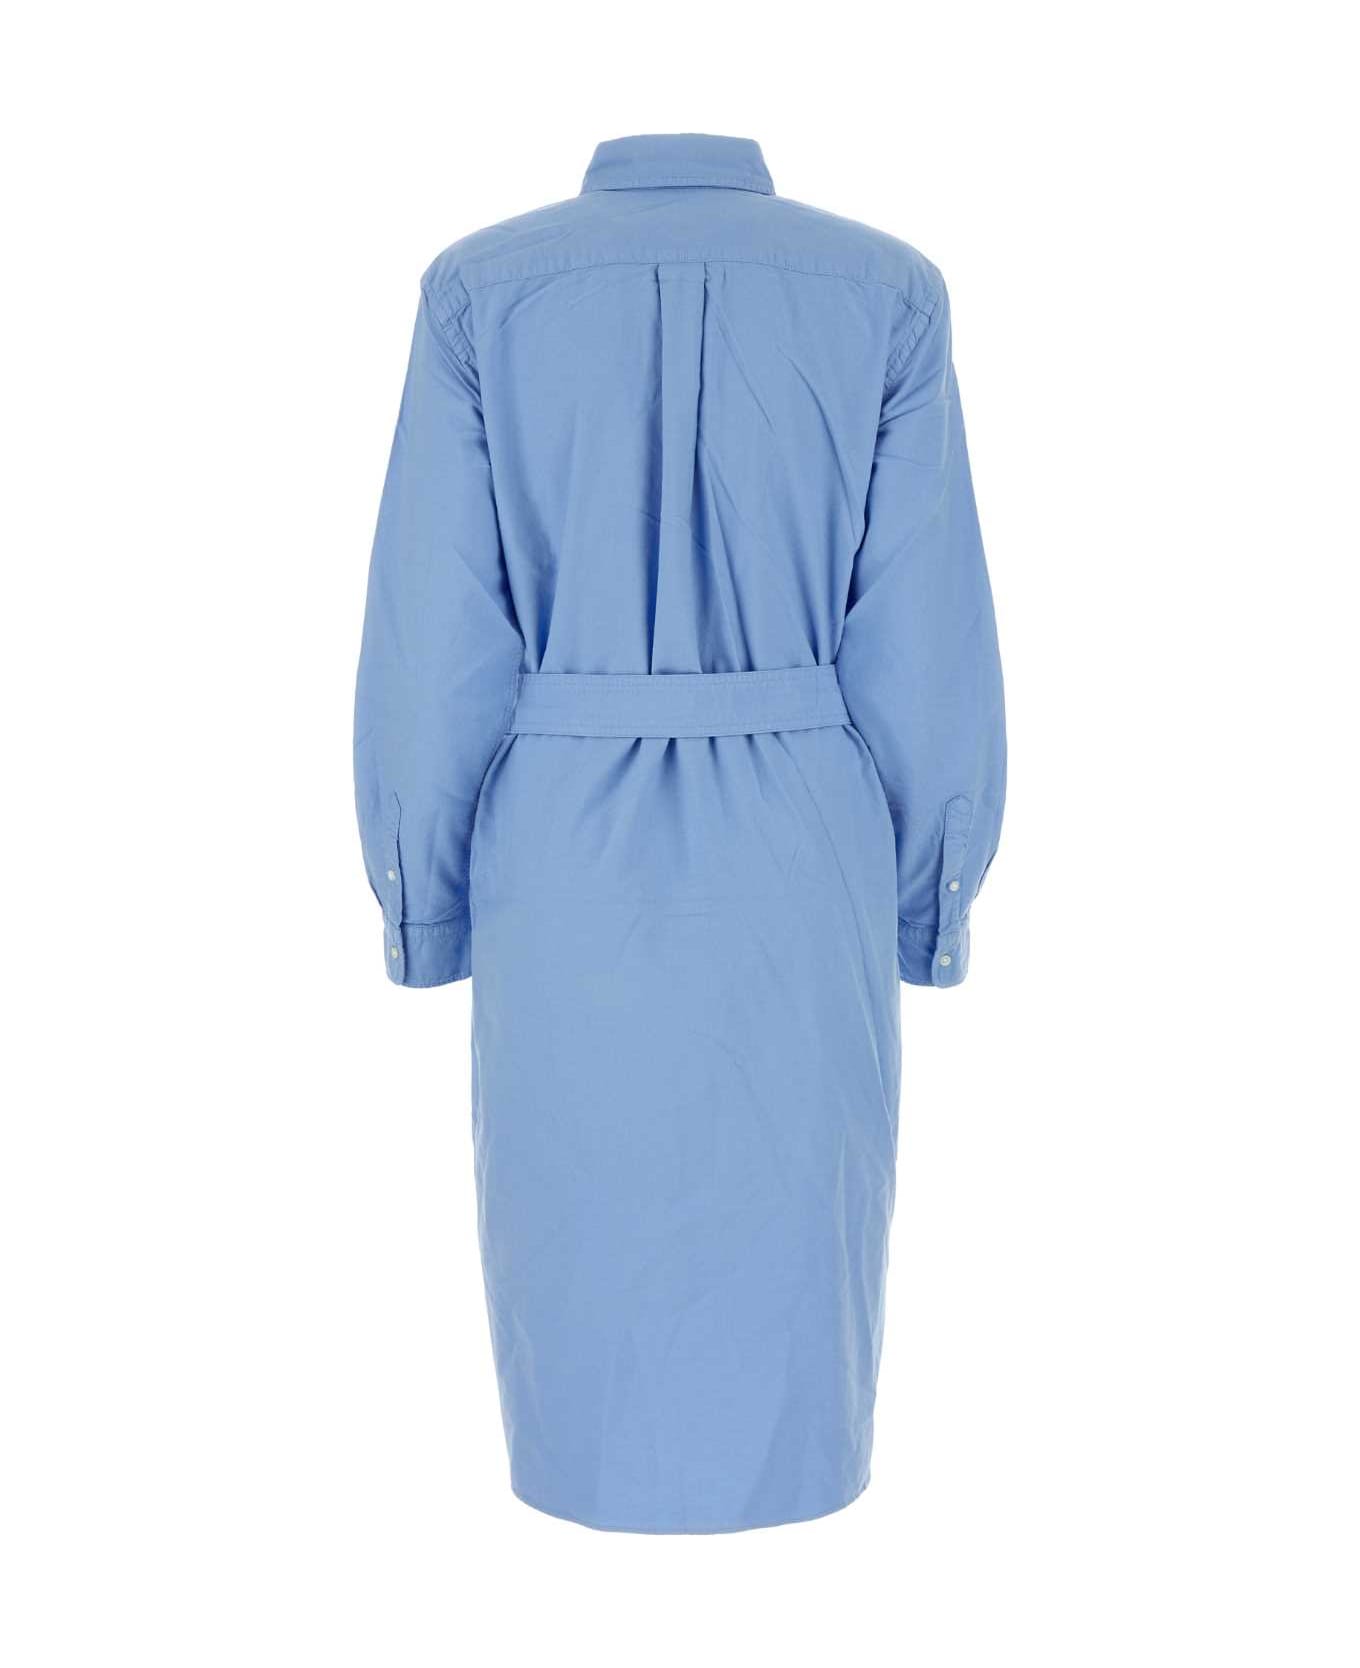 Polo Ralph Lauren Cerulean Blue Oxford Shirt Dress - LIGHTBLUE